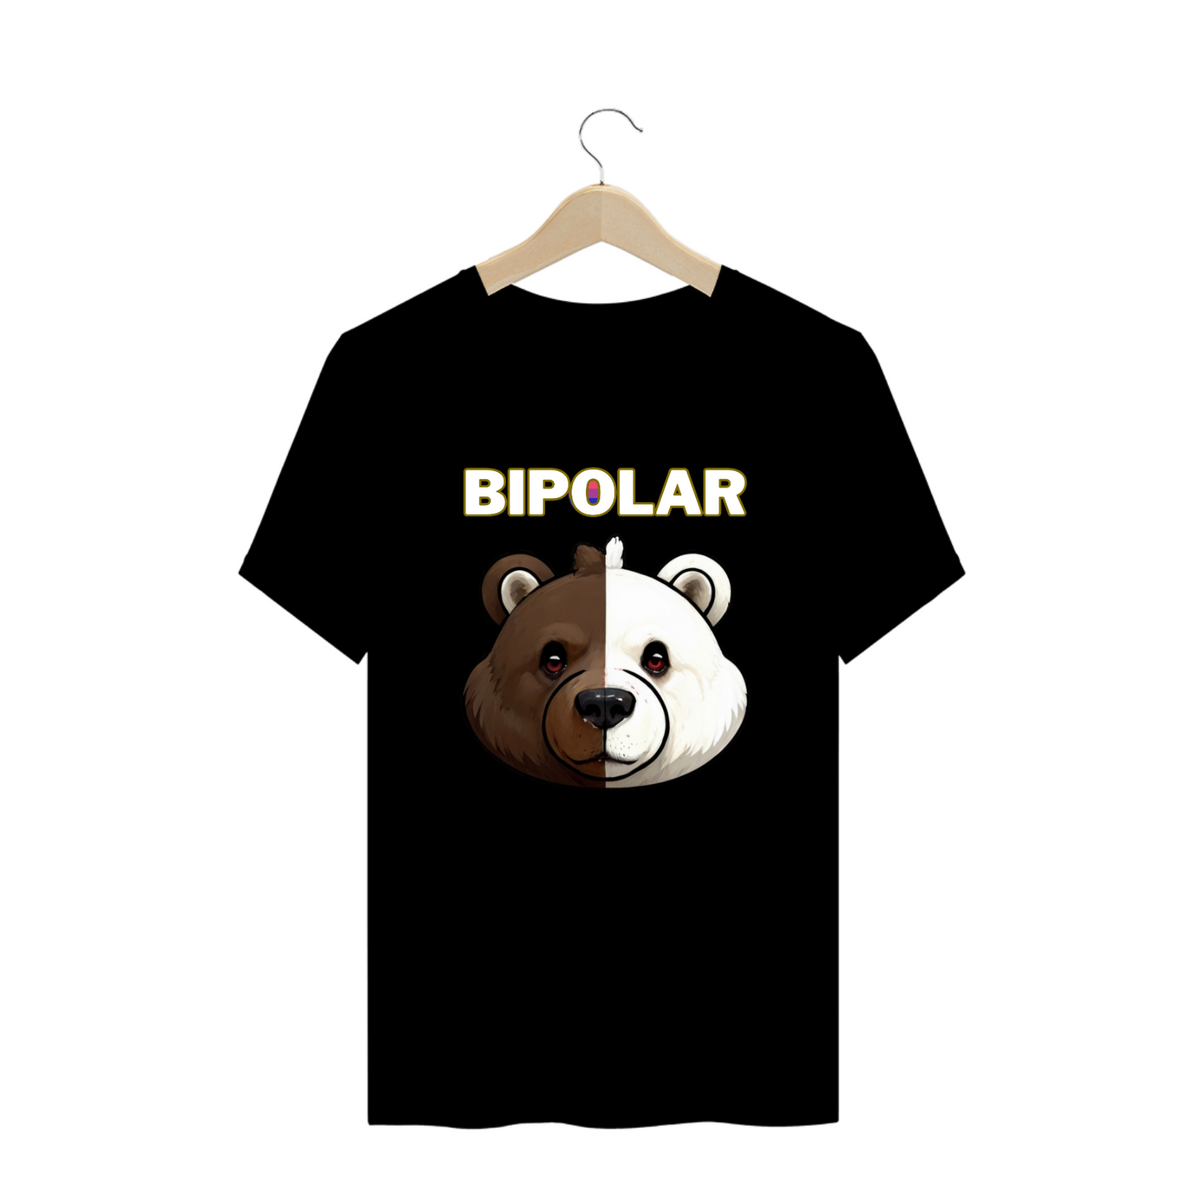 Nome do produto: Bipolar - Plus Size